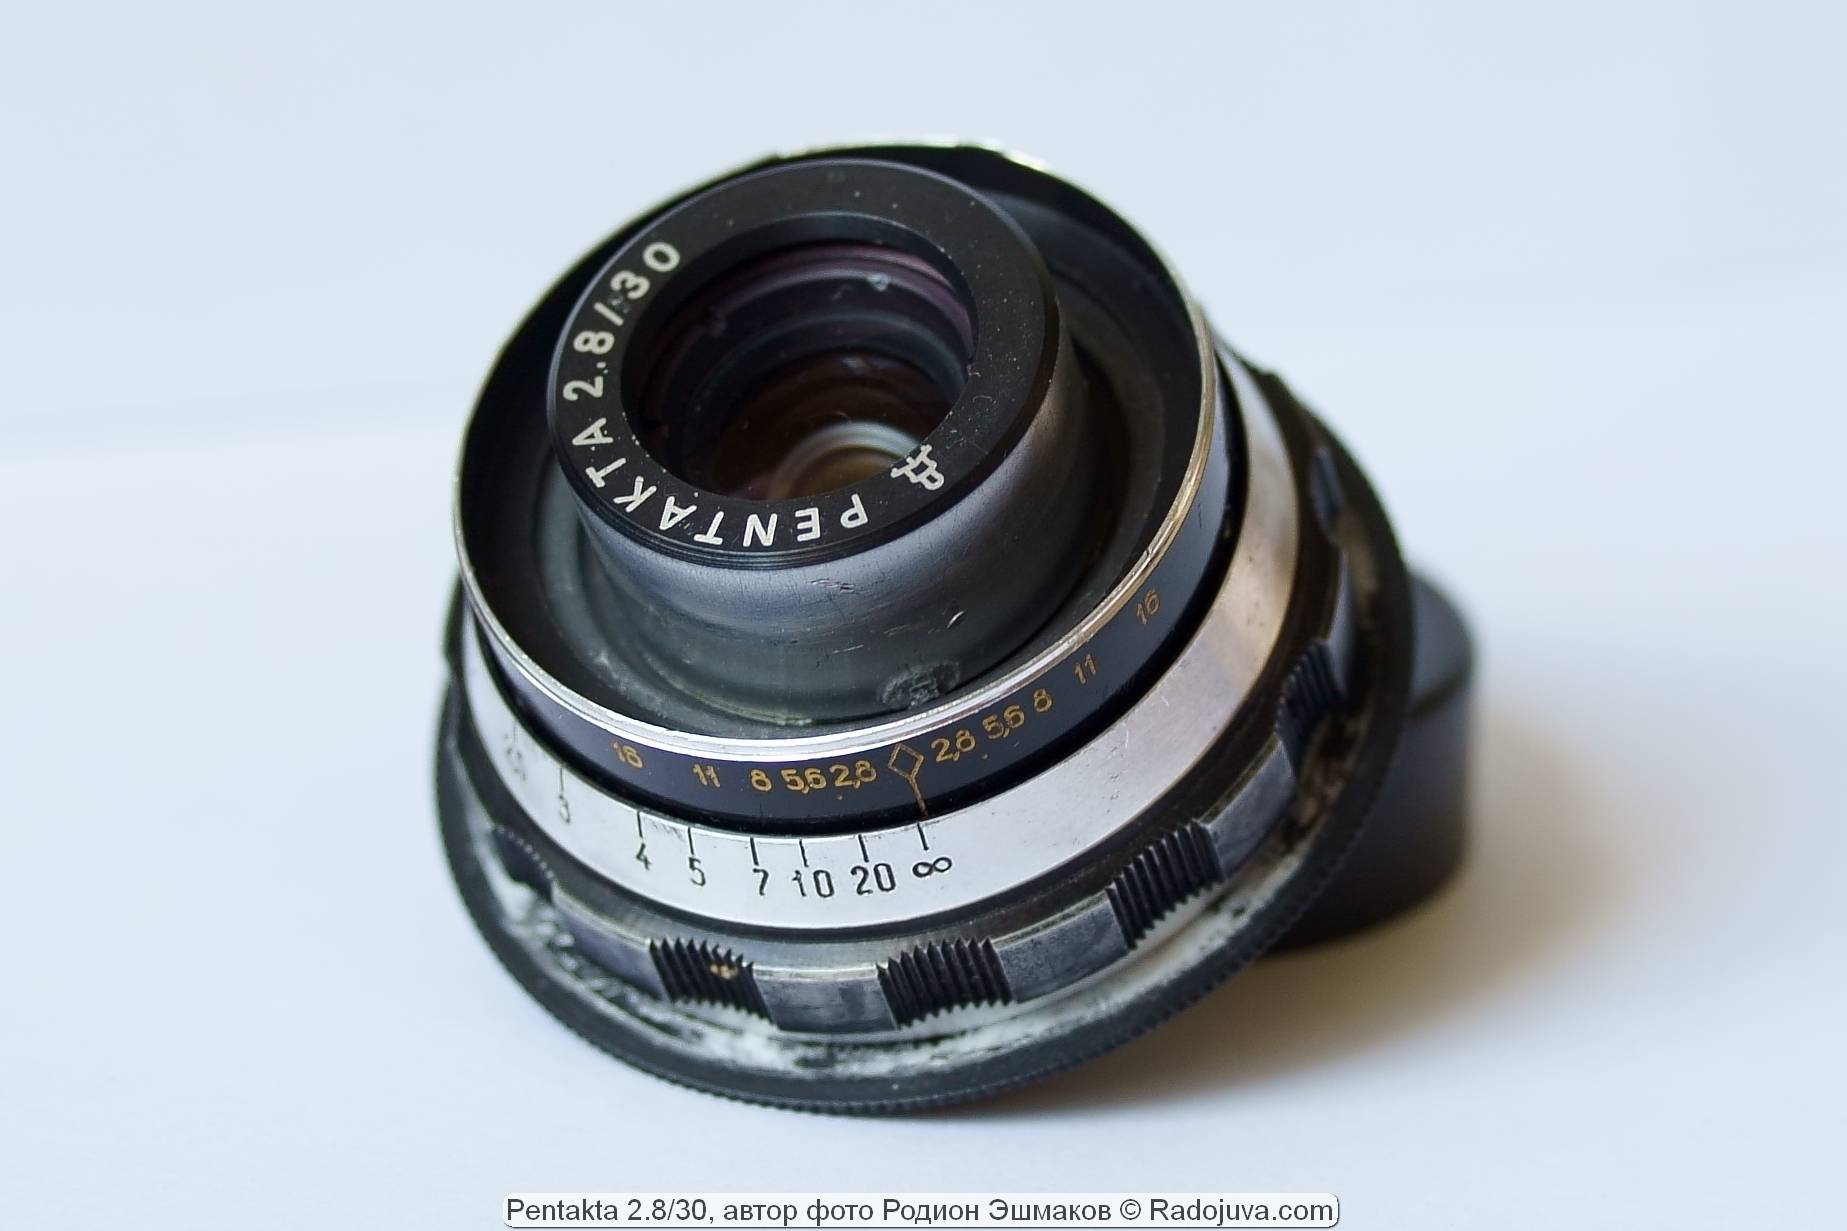 Pentakta 2.8 (2) / 30 lens adapted for Sony E.